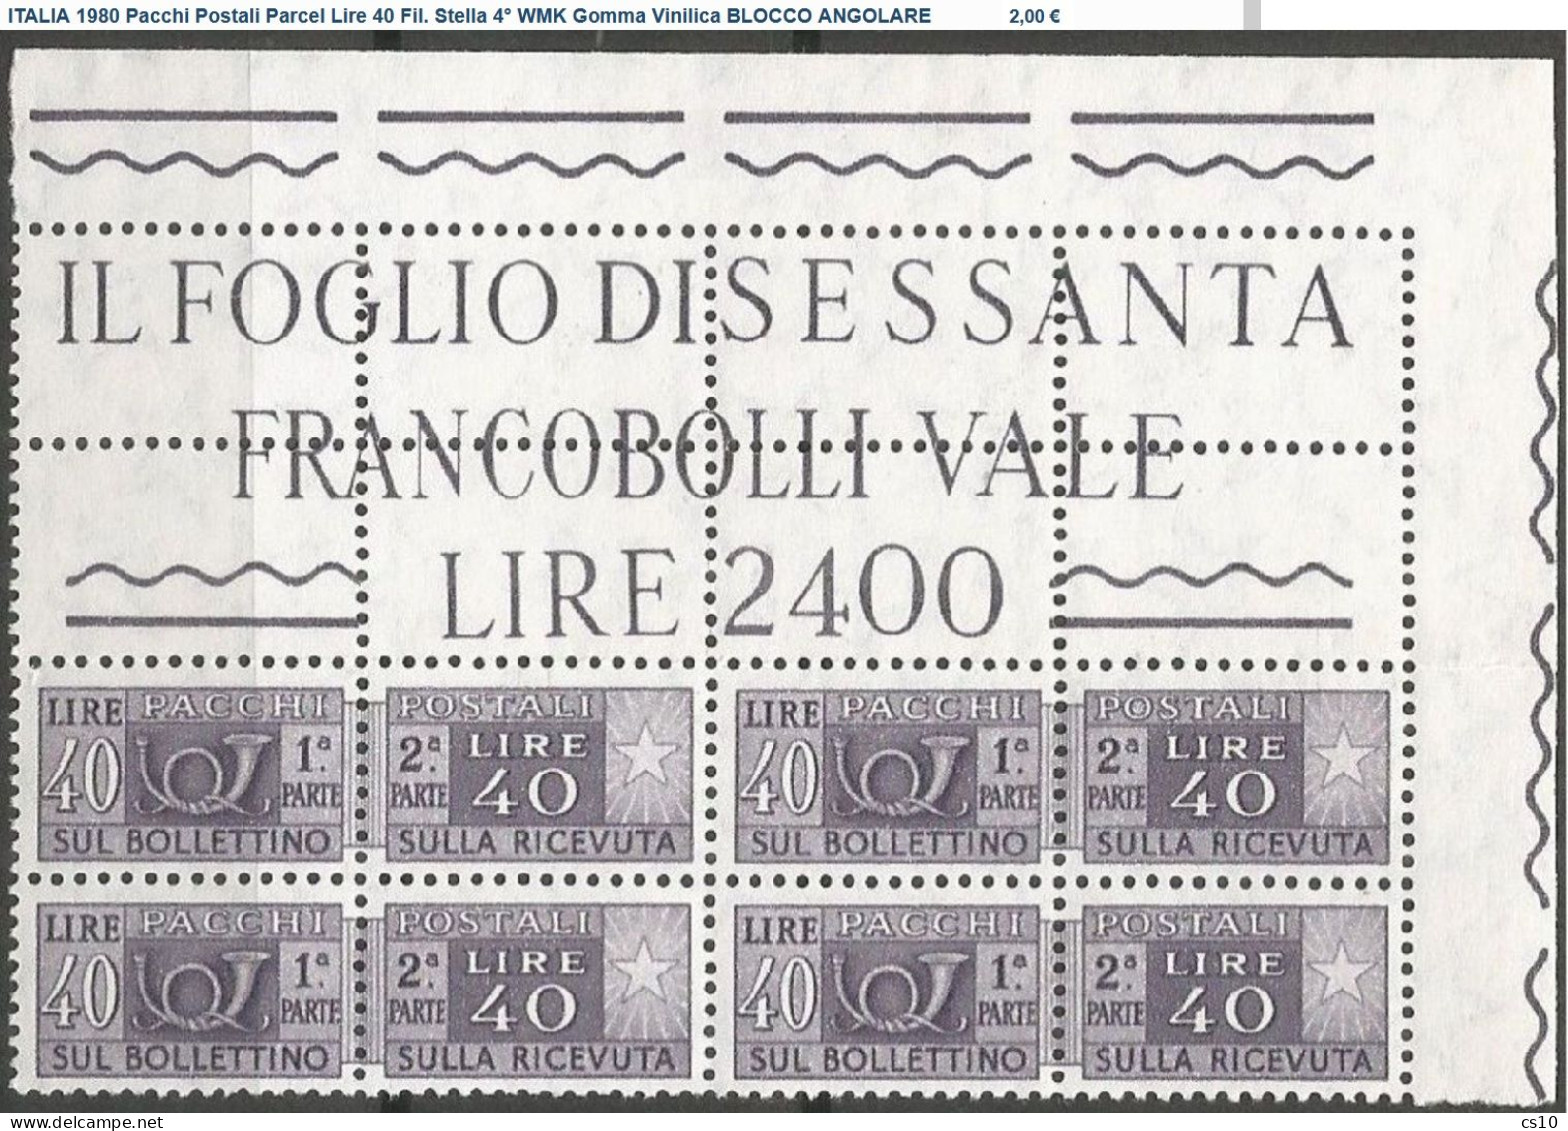 ITALIA Pacchi Postali + BLOCCO ANGOLARE : Lotto 23 DIFFERENTI per Filigrana, Gomma, Stampa, Perforazione Testata Nuovi**